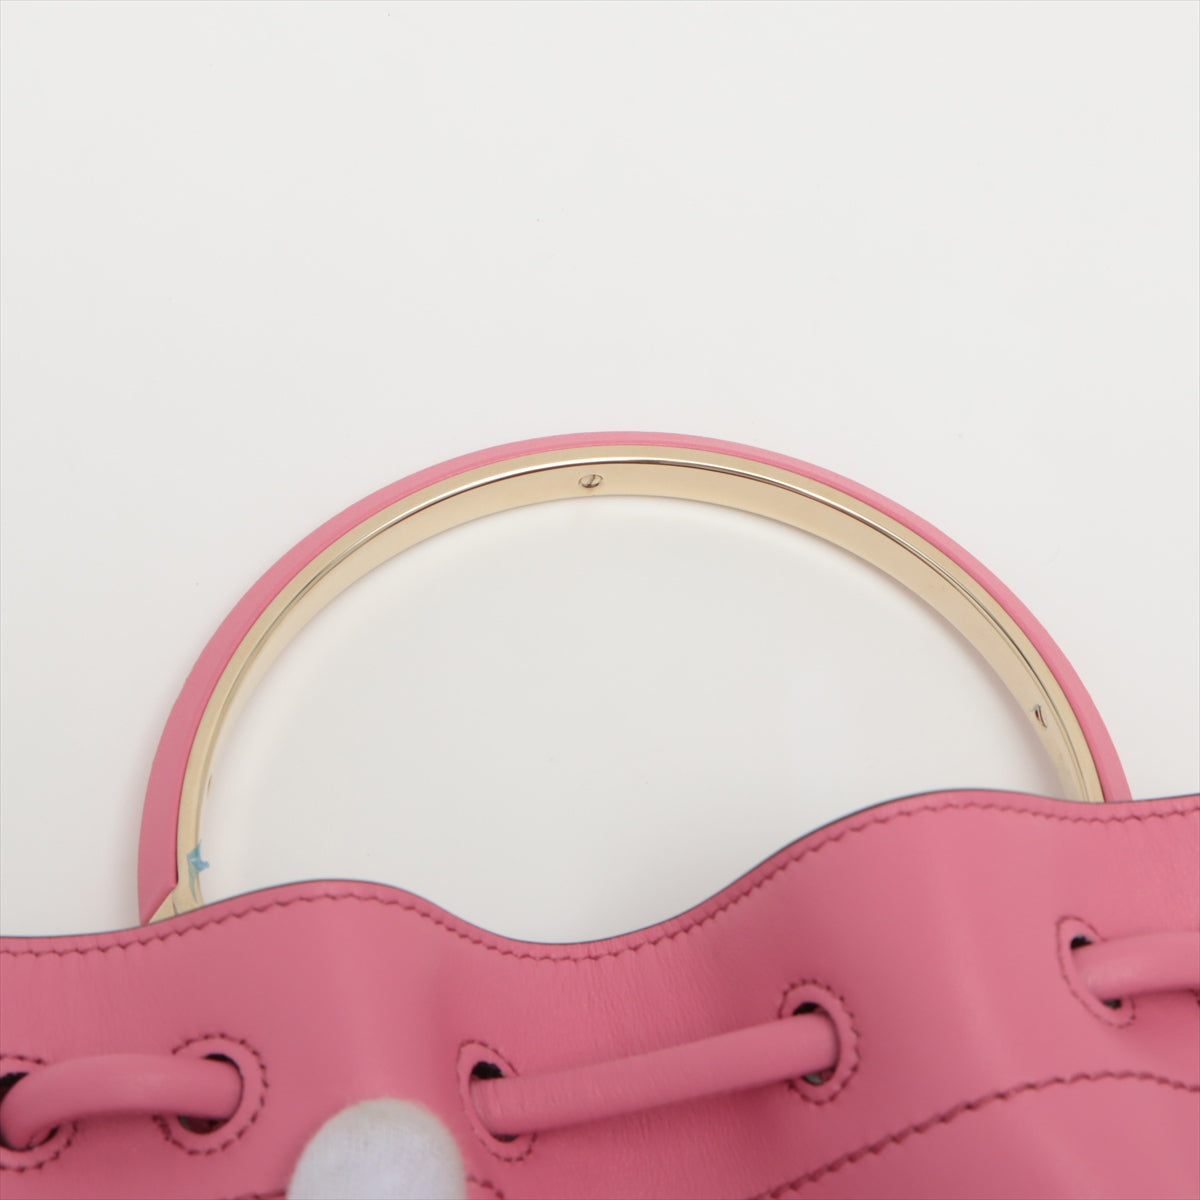 ティファニー クラッチバッグ セカンドバッグ バッグ 手持ち鞄 レザー ピンク素材レザー